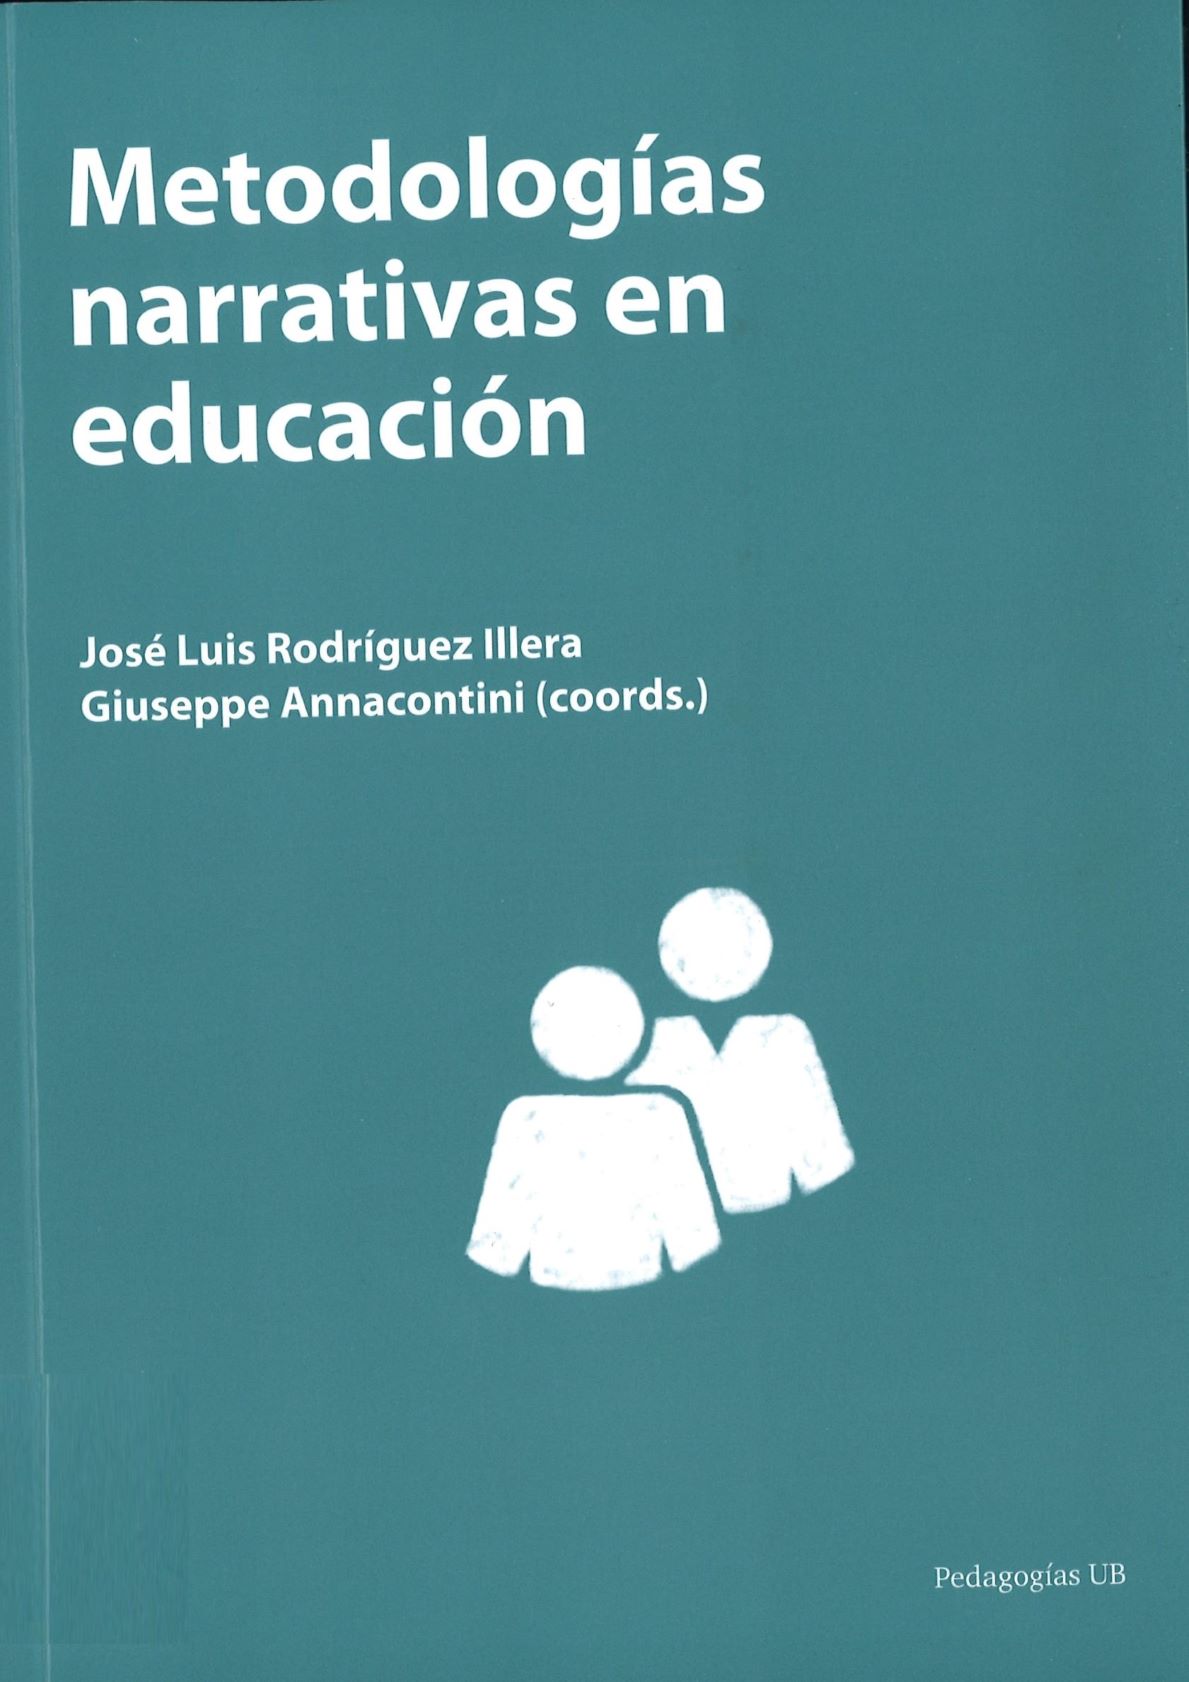 Imagen de portada del libro Metodologías narrativas en educación